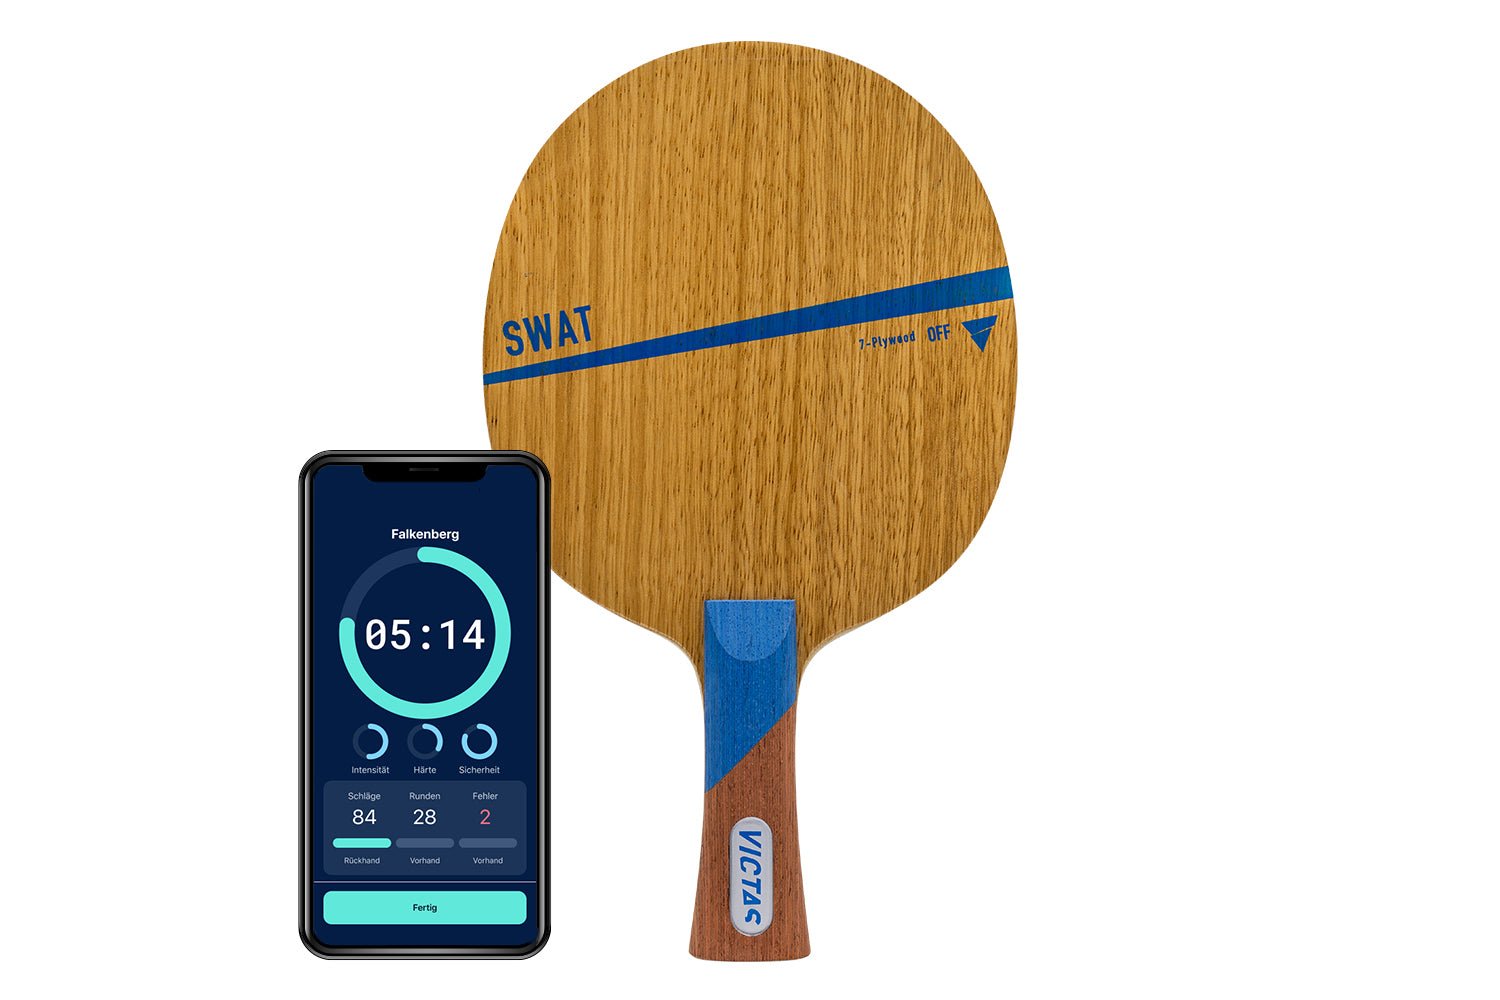 Victas Swat Tischtennisschläger mit konkaven Griff und Smartphone zeigt Daten des Schlägers vor weißem Hintergrund